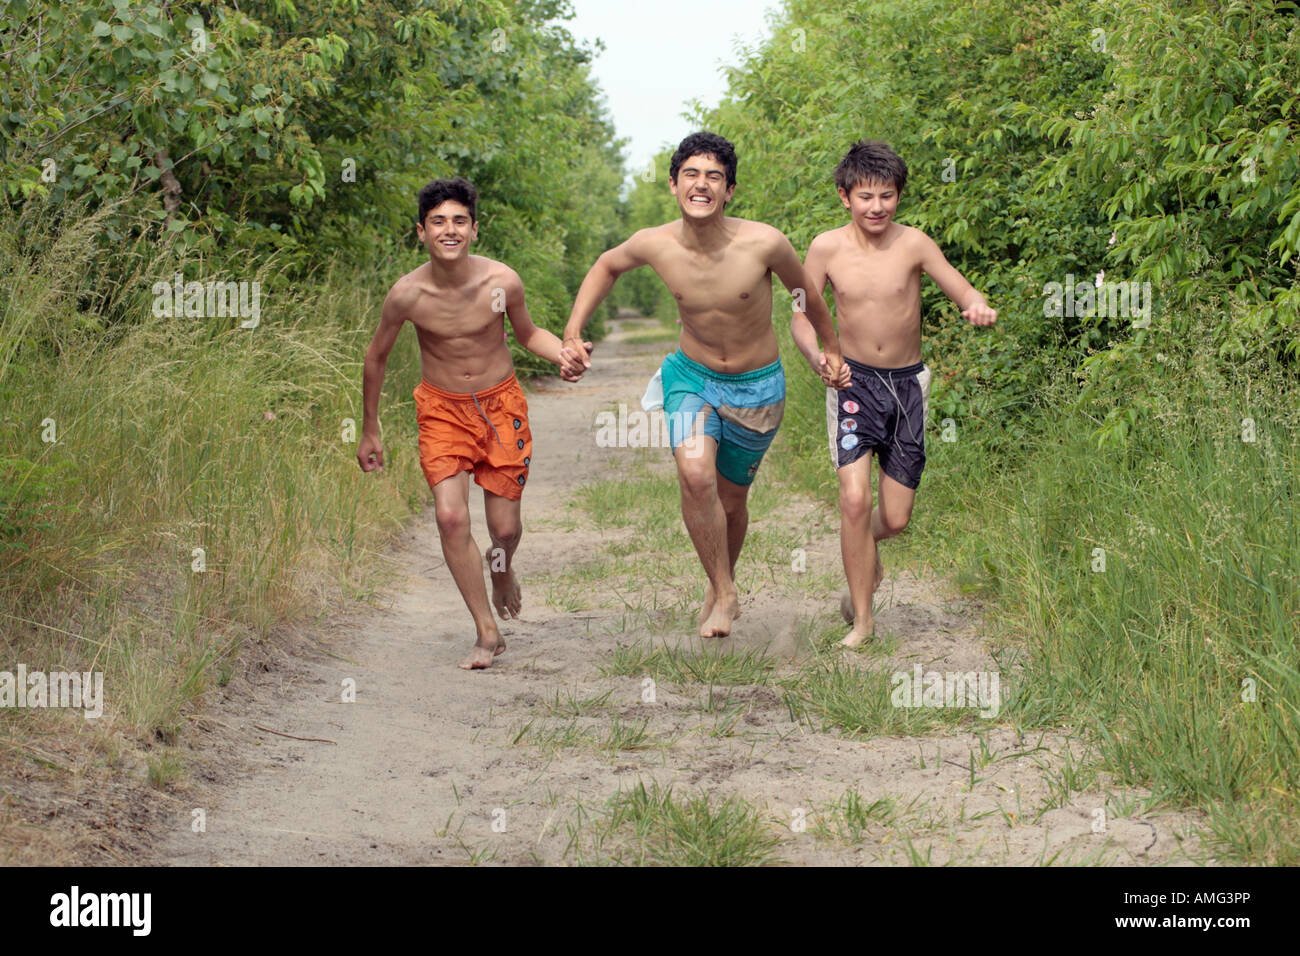 drei Jungs im Teenageralter, die entlang einer Landstraße in ihre nackten F...